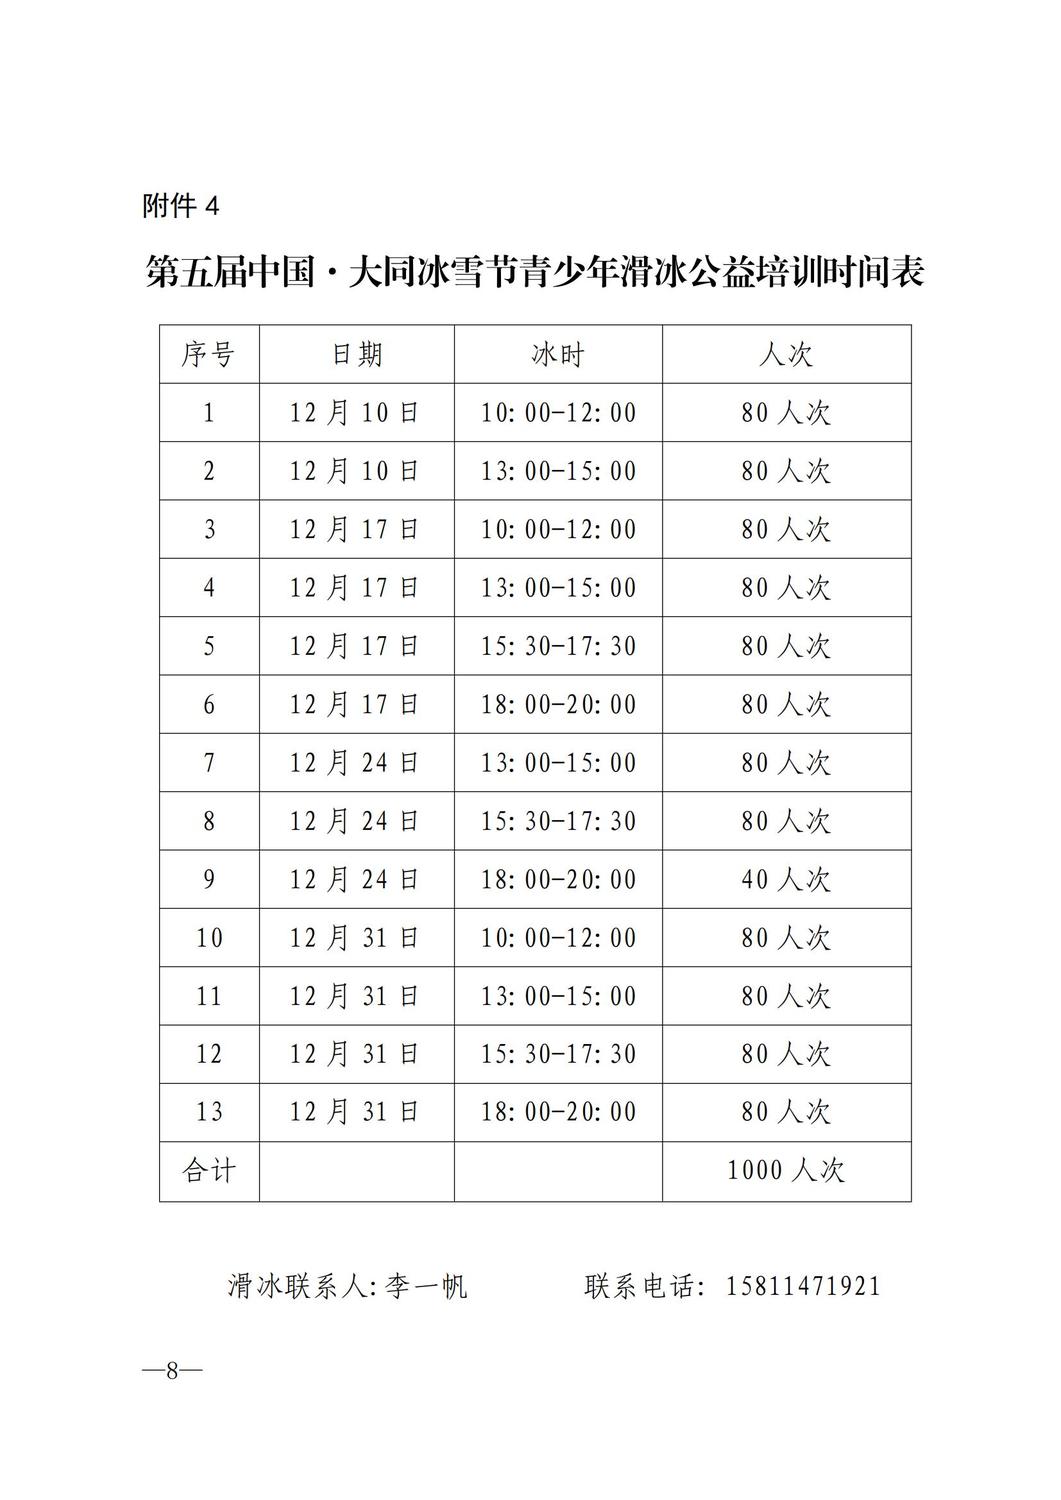 大同市冰雪培训冰雪特色学校联赛通知(1)_07.jpg